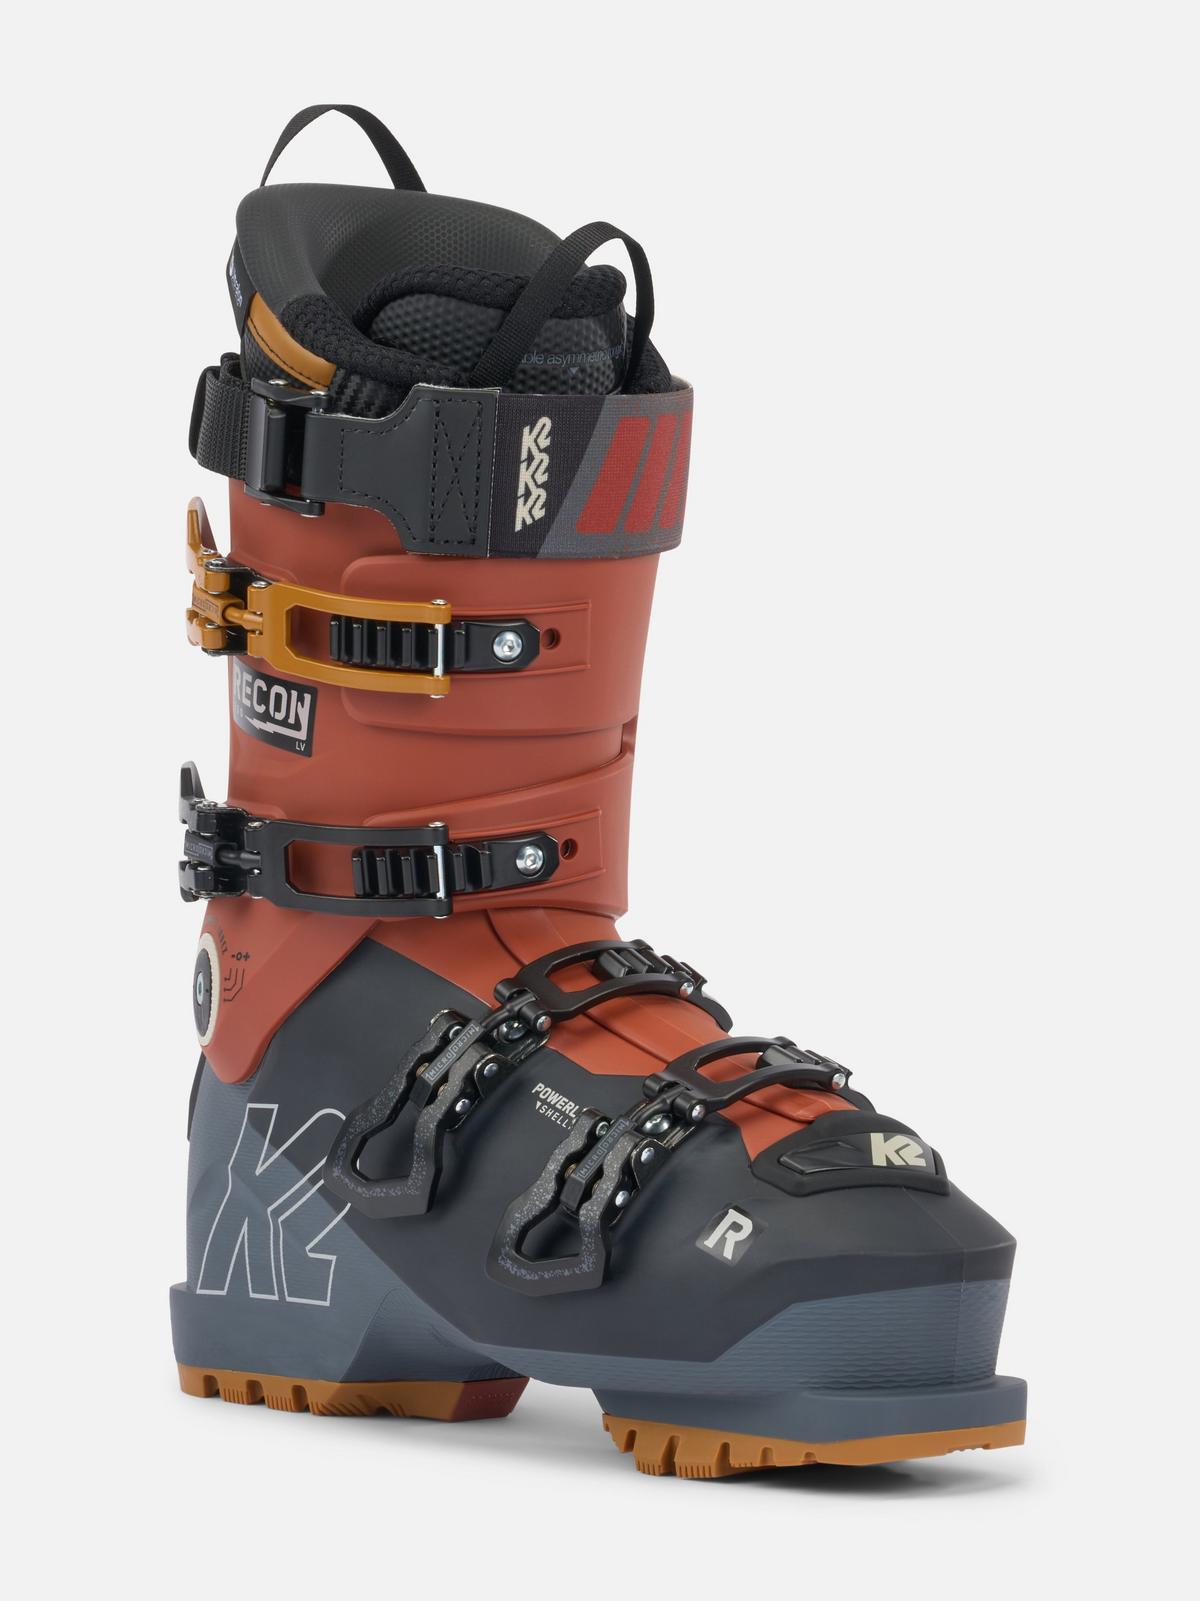 K2 Recon 130 Ski Boots